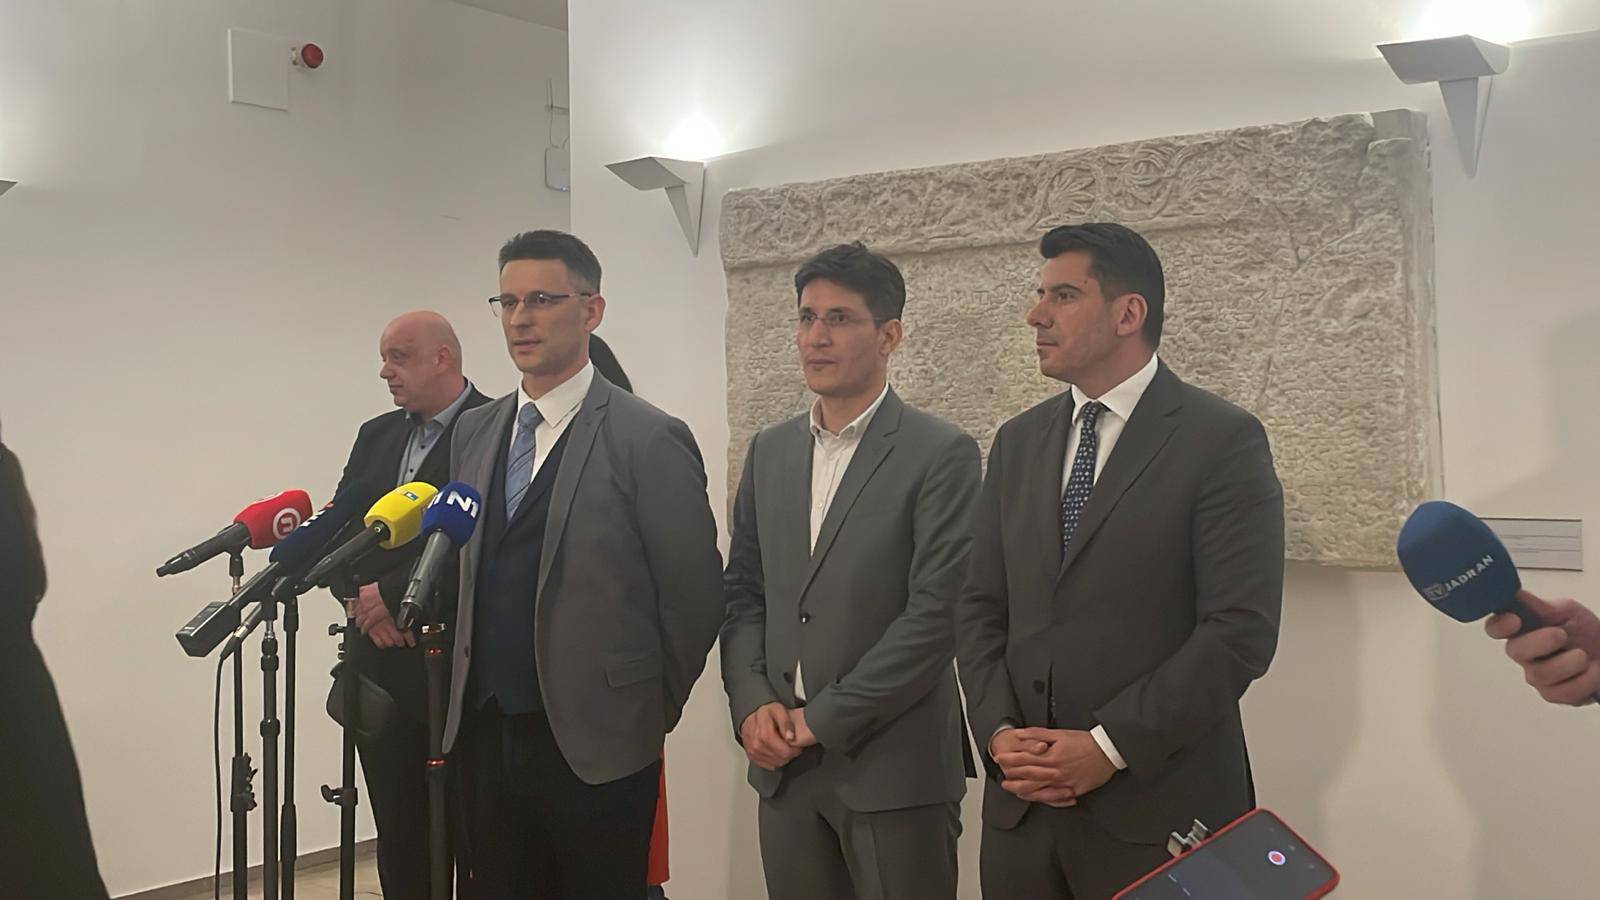 Most zajedno s HSP-om predao kandidacijske liste za EP. Miletić na listi, o Raspudićima će - sutra